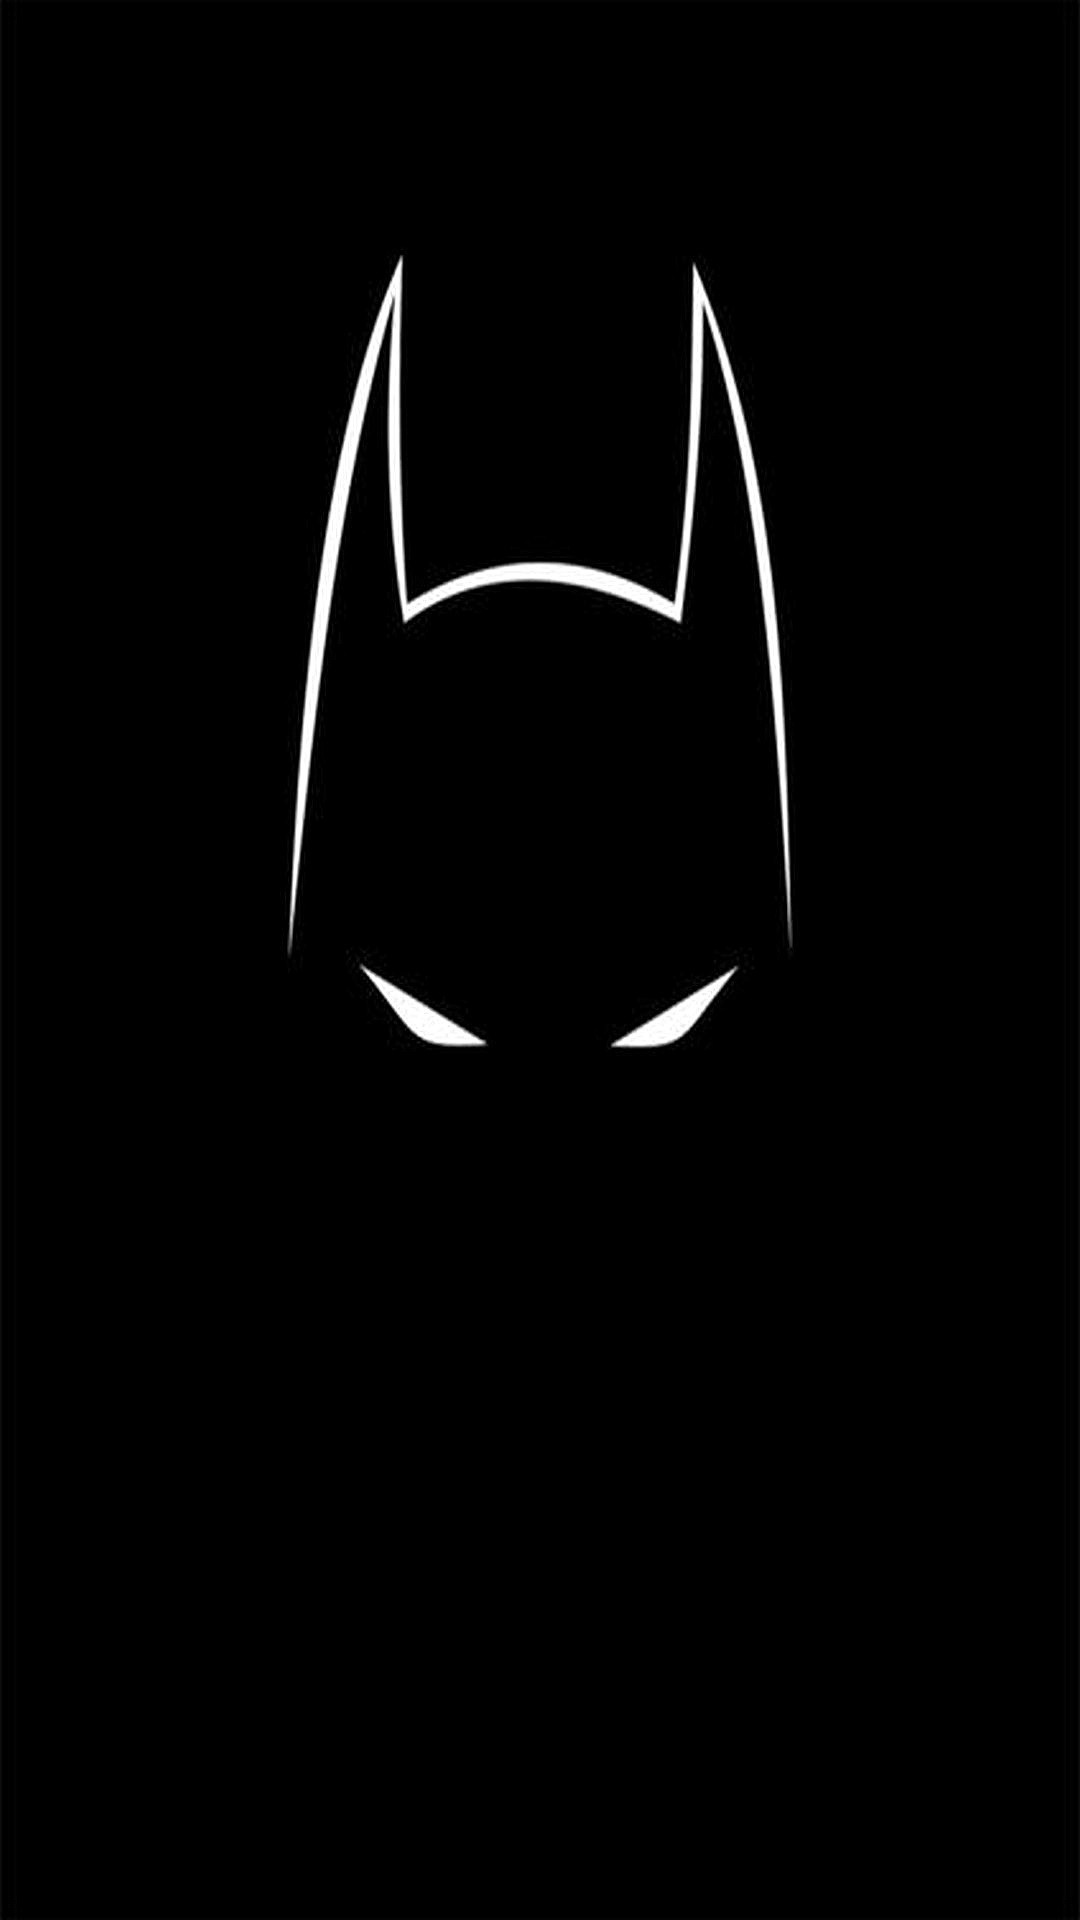 Batman iphone Wallpaper - NawPic